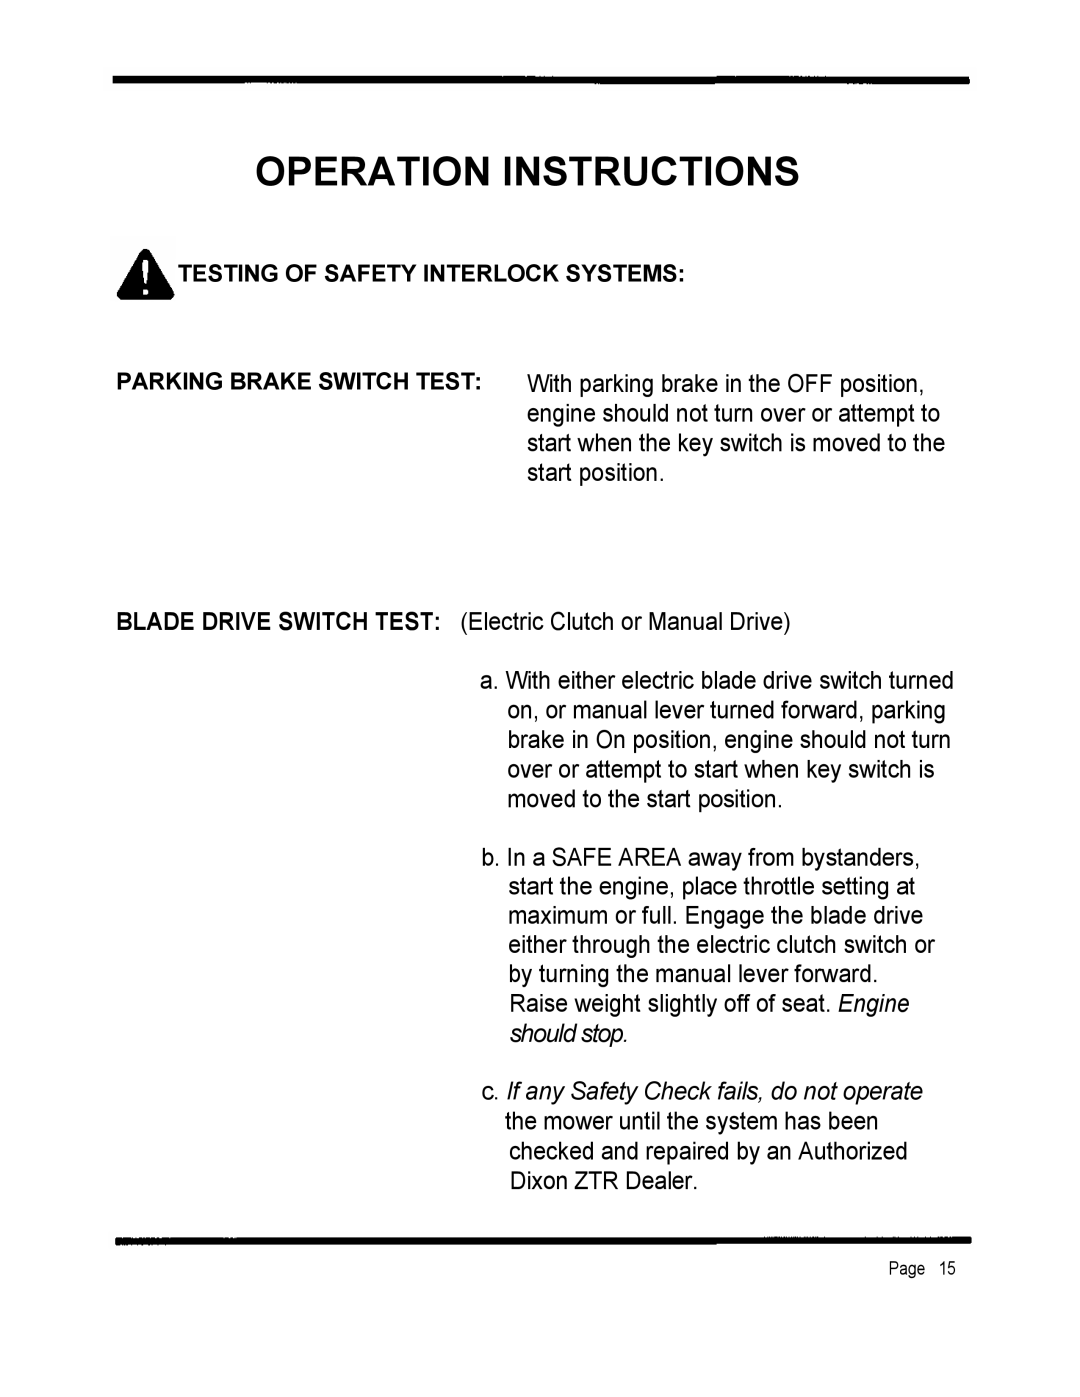 Dixon 2301 manual Operation Instructions, should stop 